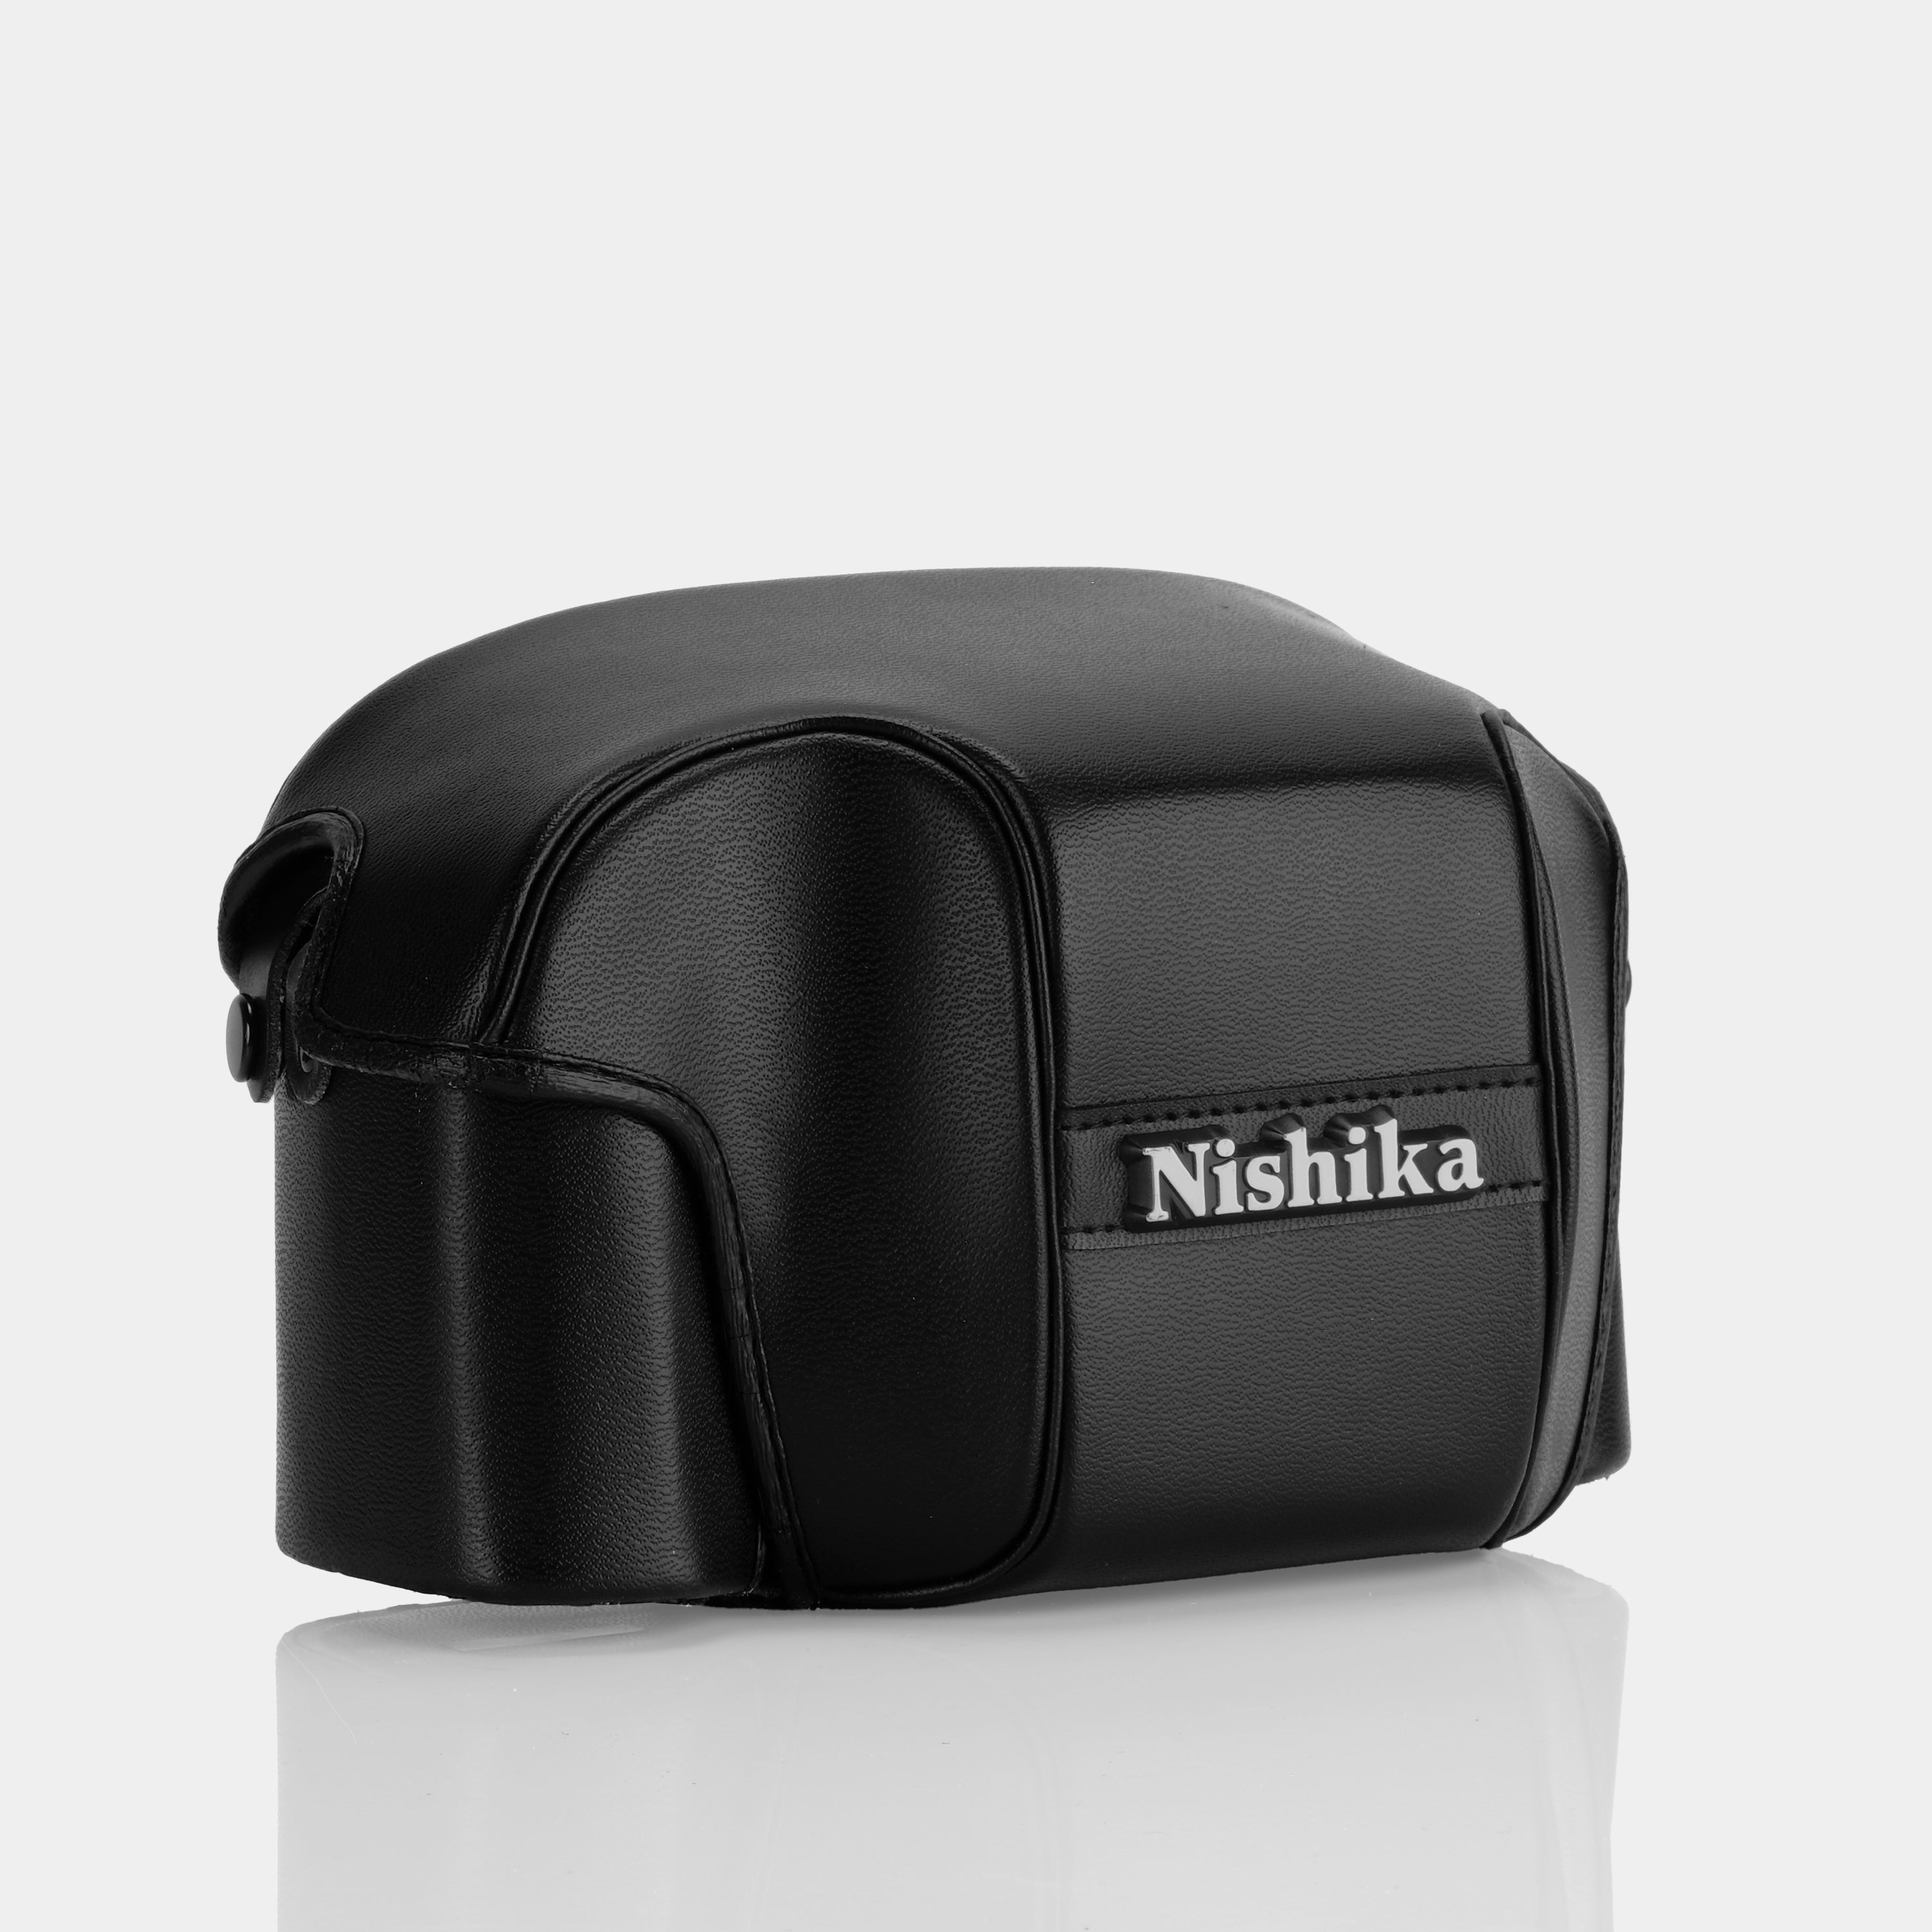 Nishika 3D N8000 35mm Film Camera with Accessories